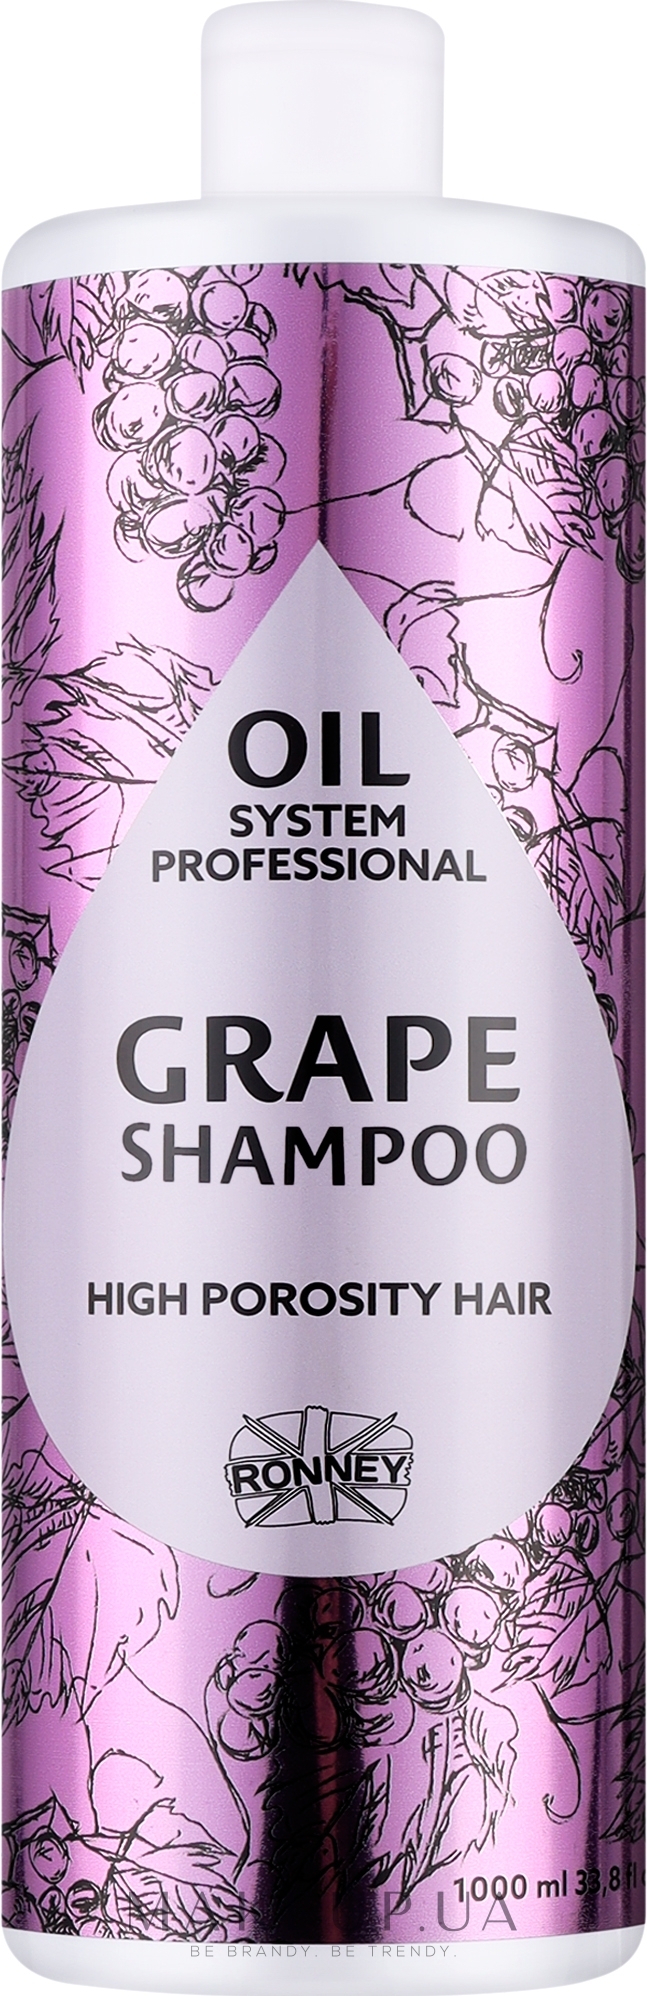 Шампунь для високопористого волосся з олією винограду - Ronney Professional Oil System High Porosity Hair Grape Shampoo — фото 1000ml